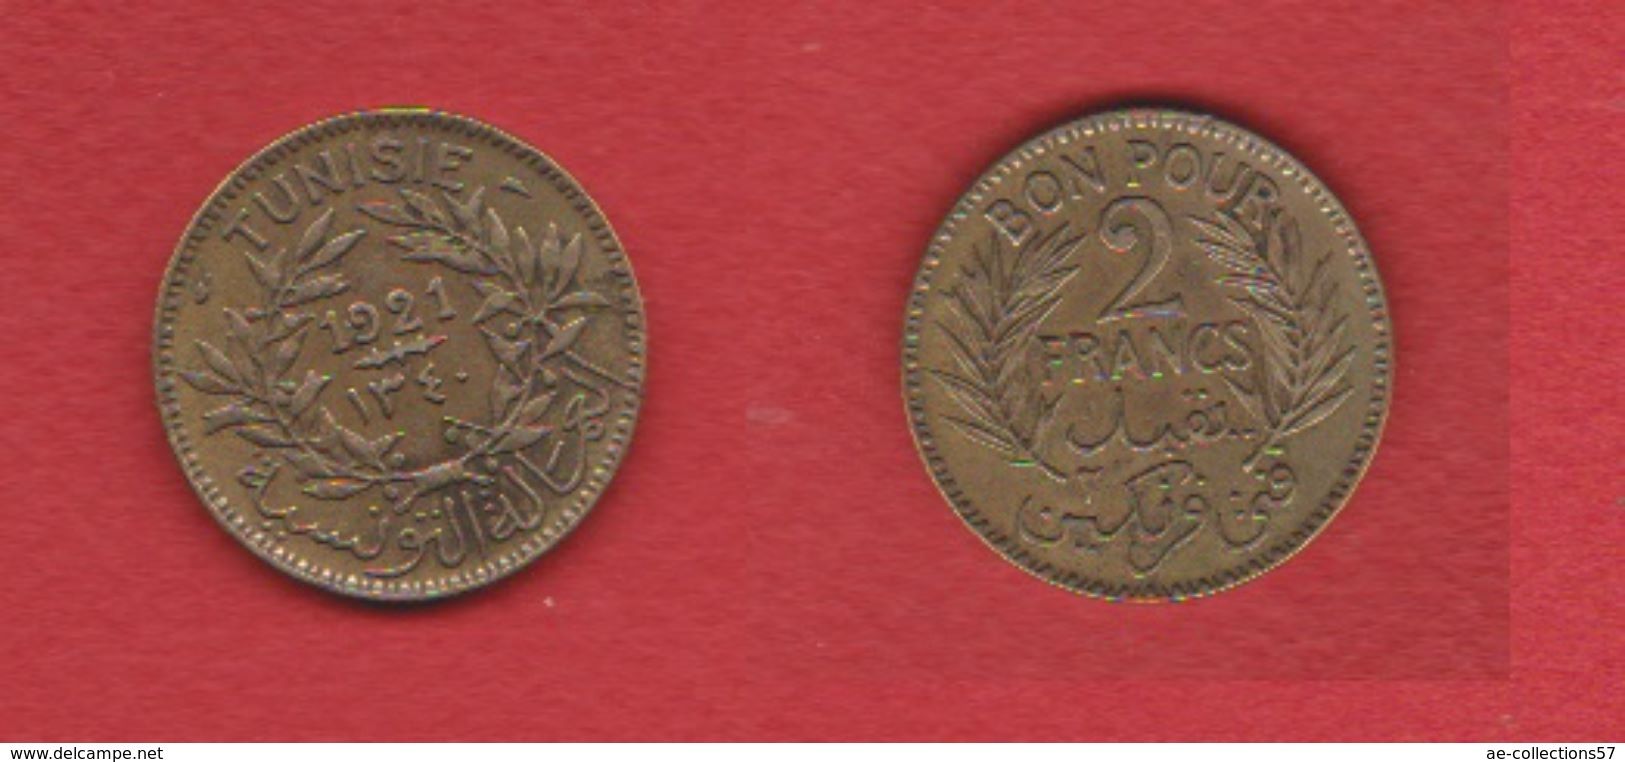 Tunisie / KM 248 / 2 Francs 1921 / TTB - Tunesien